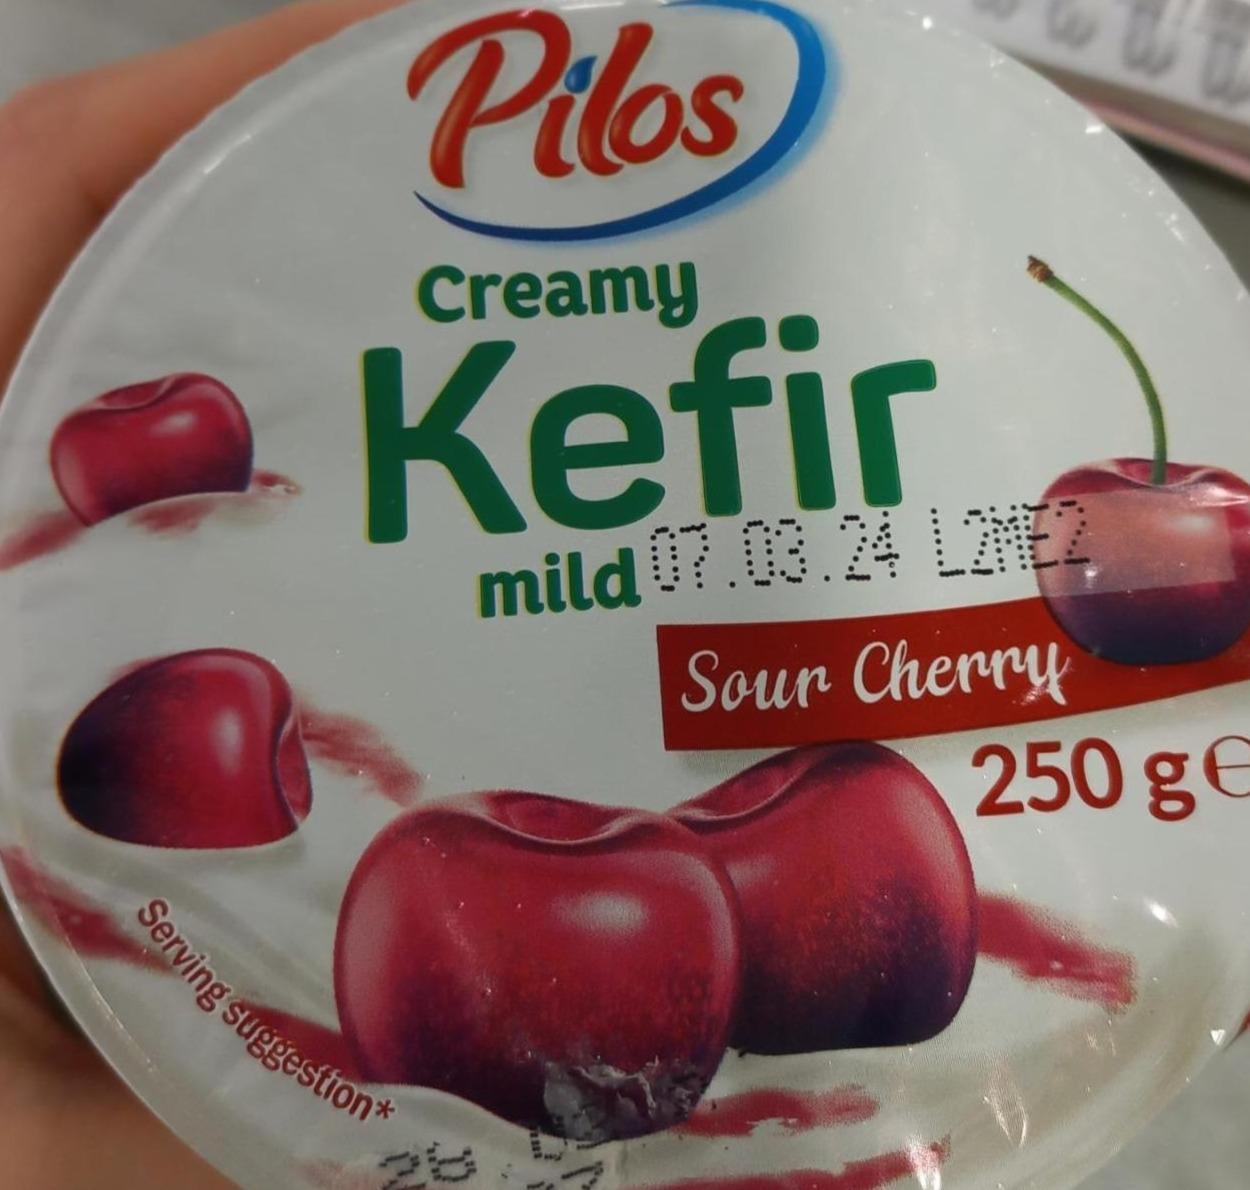 Фото - Creamy Kefir mild Pilos